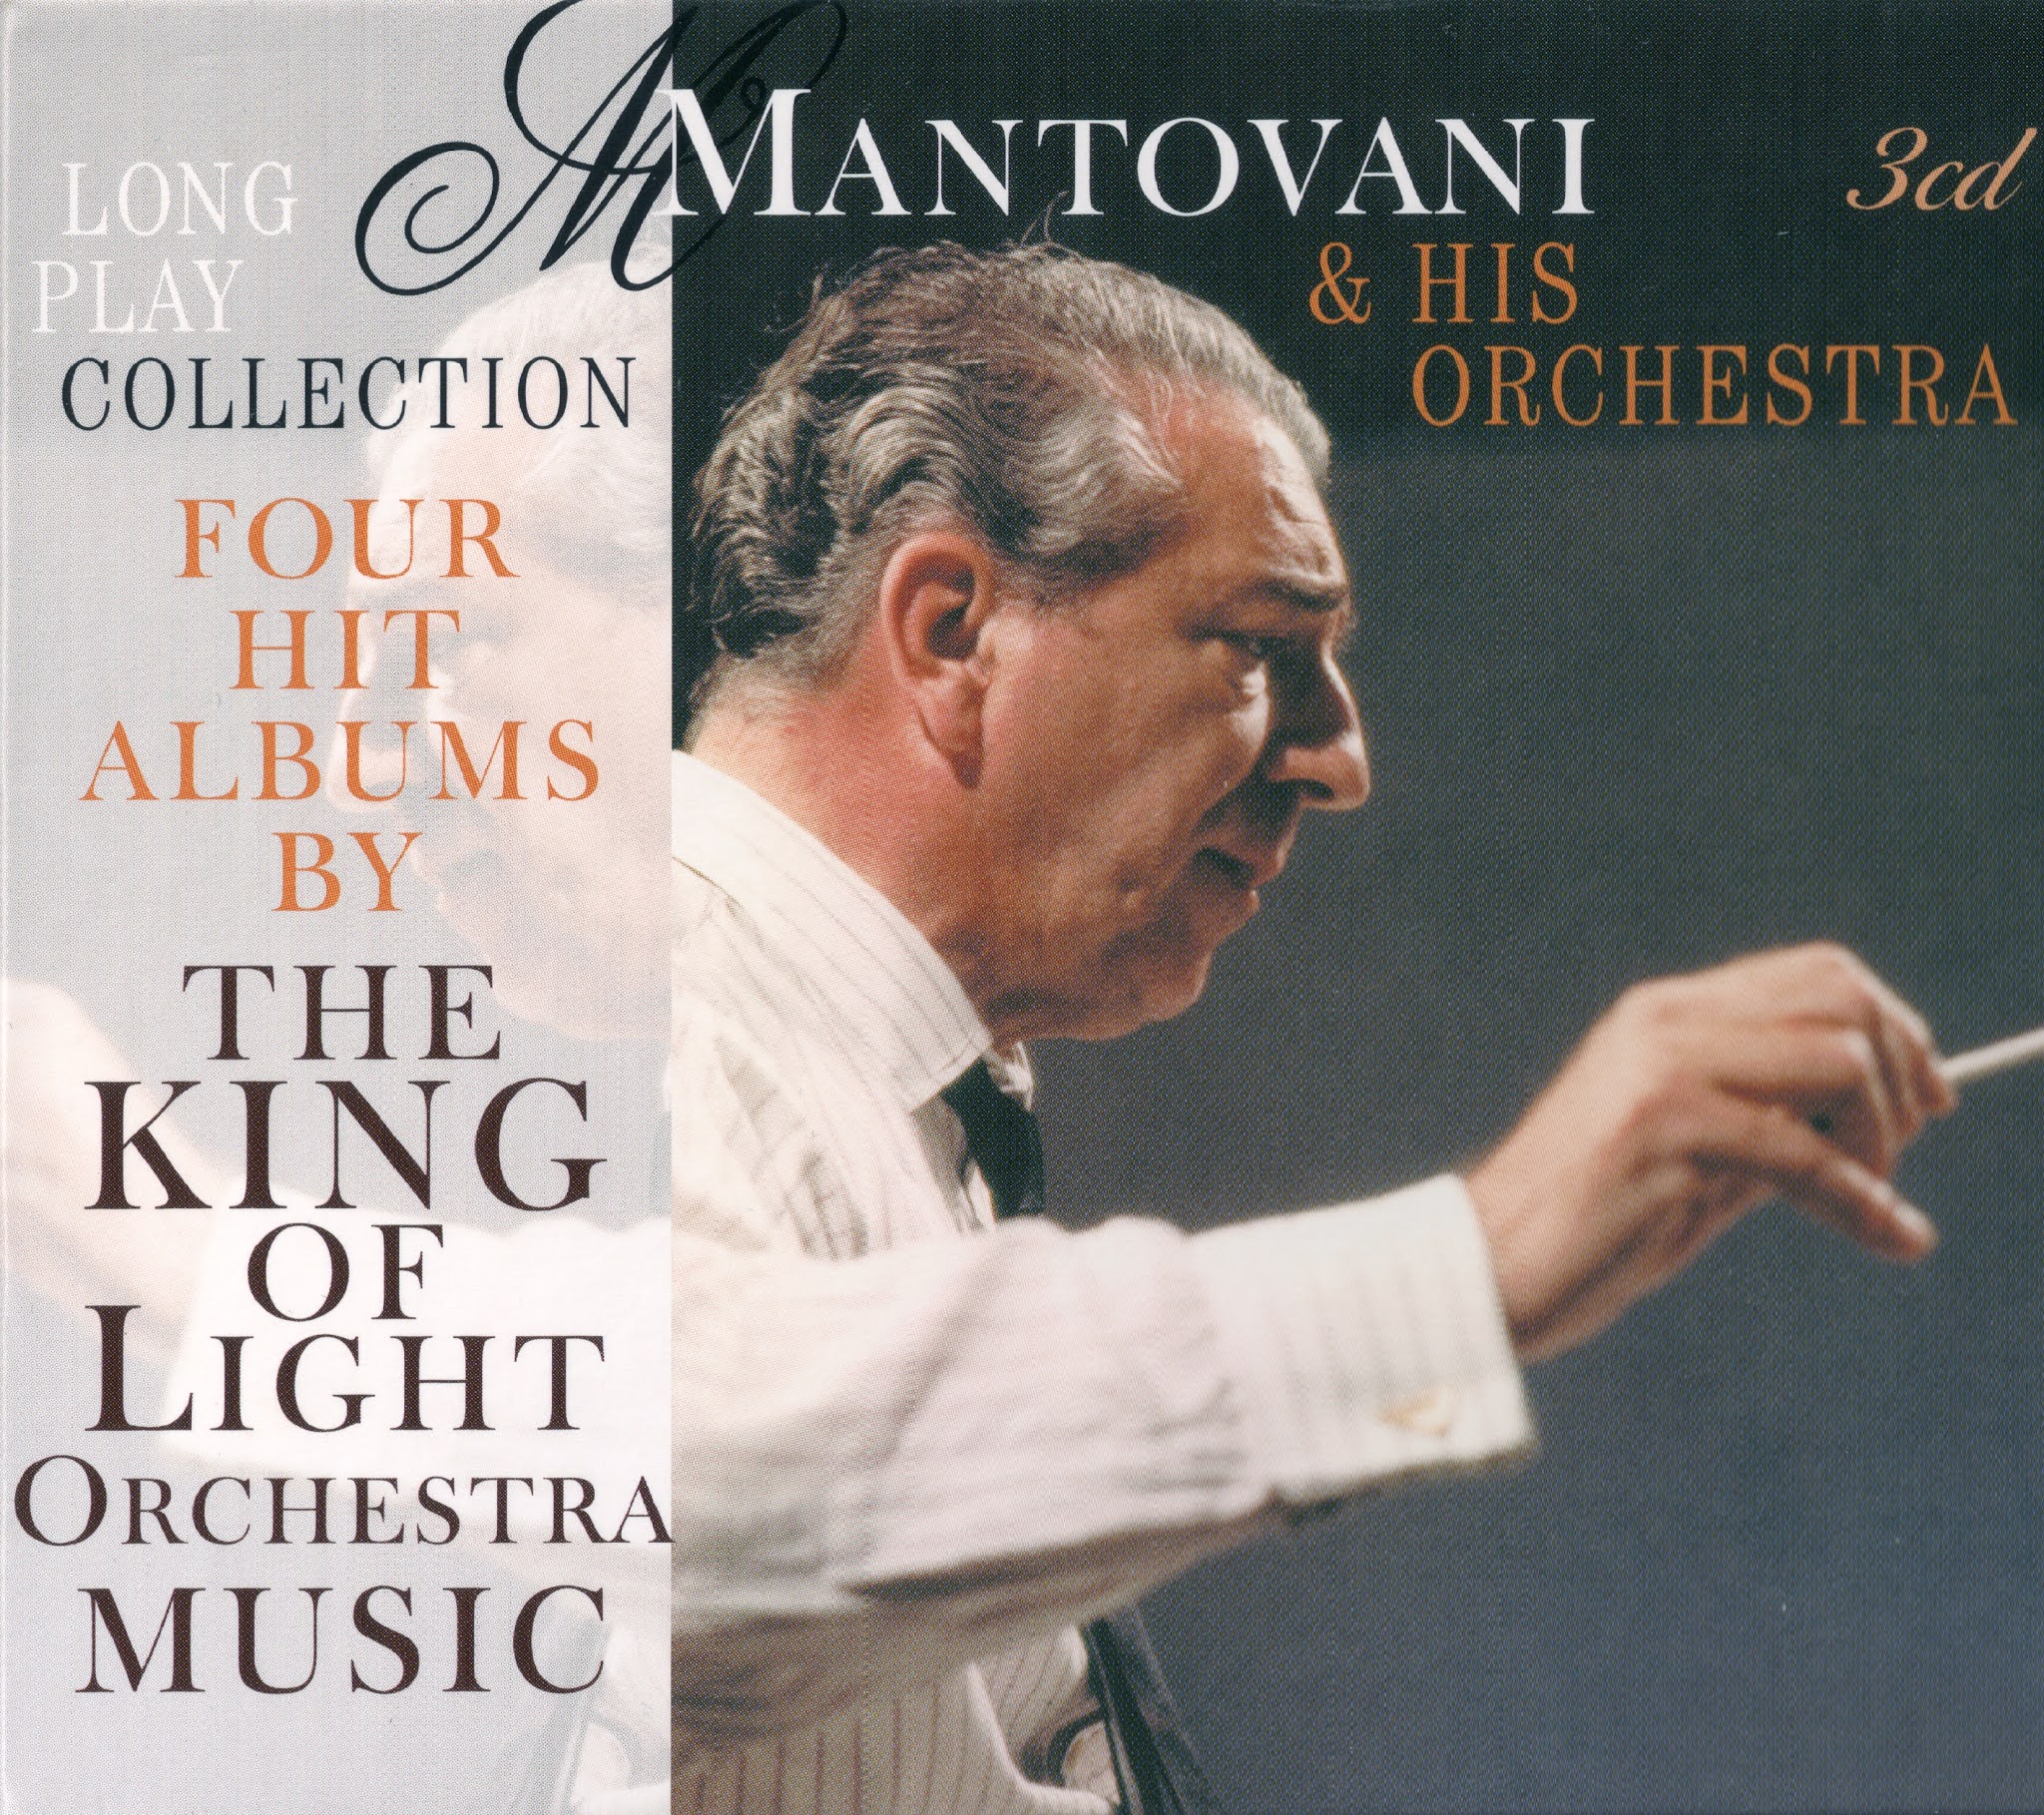 Orchestra collection. Mantovani & his Orchestra фото. Mantovani - Collector’s Mantovani Volume 1. Mantovani - Collector’s Mantovani Volume 2 - 2002. Re discover Mantovani.